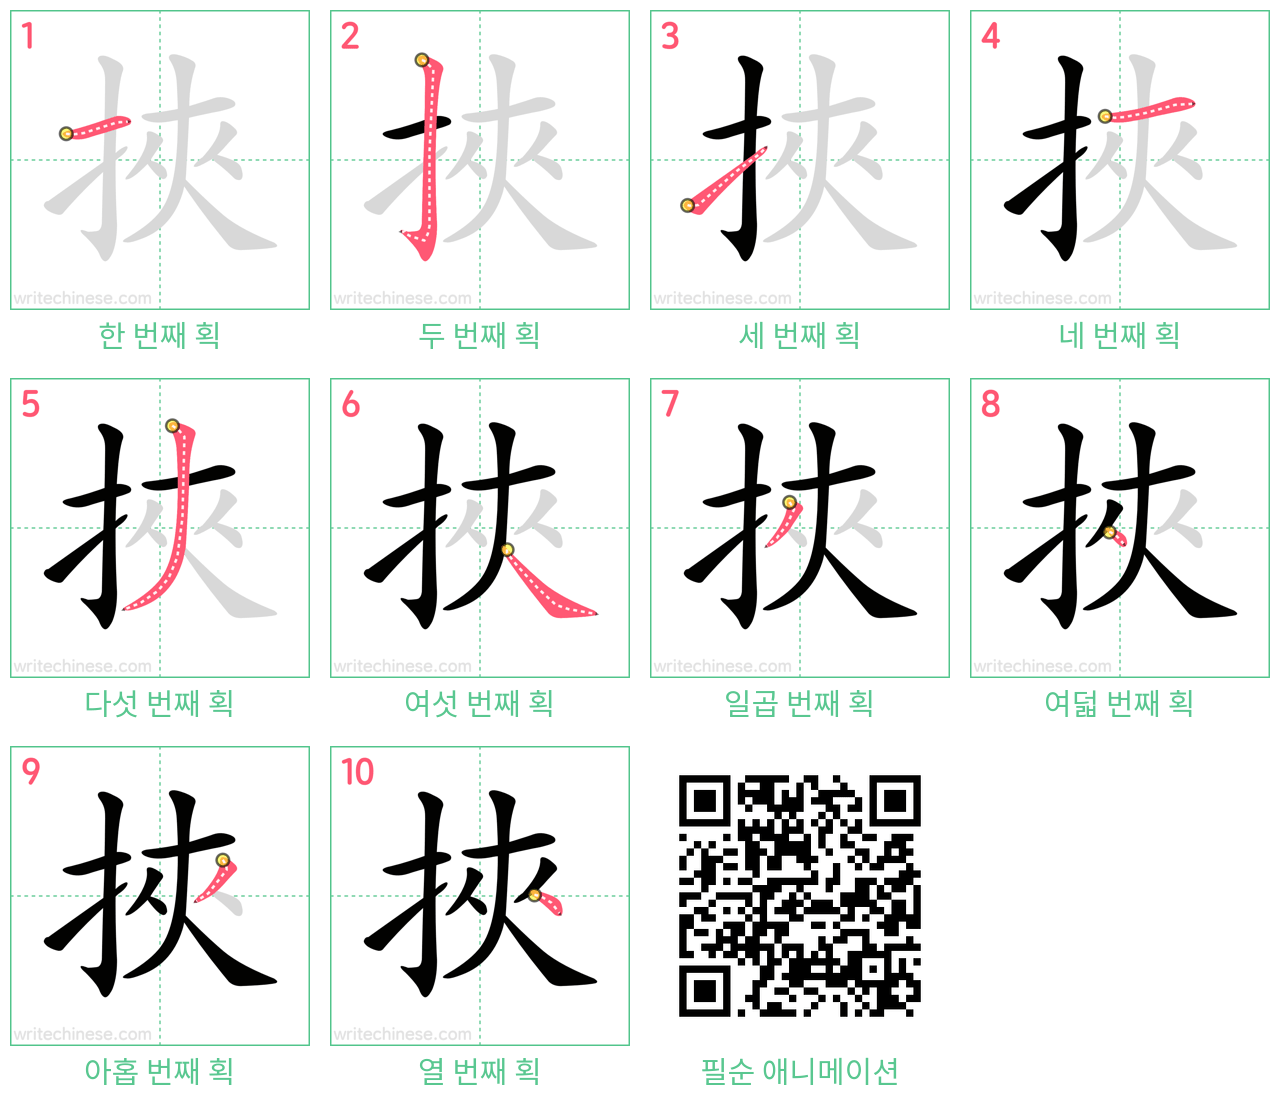 挾 step-by-step stroke order diagrams